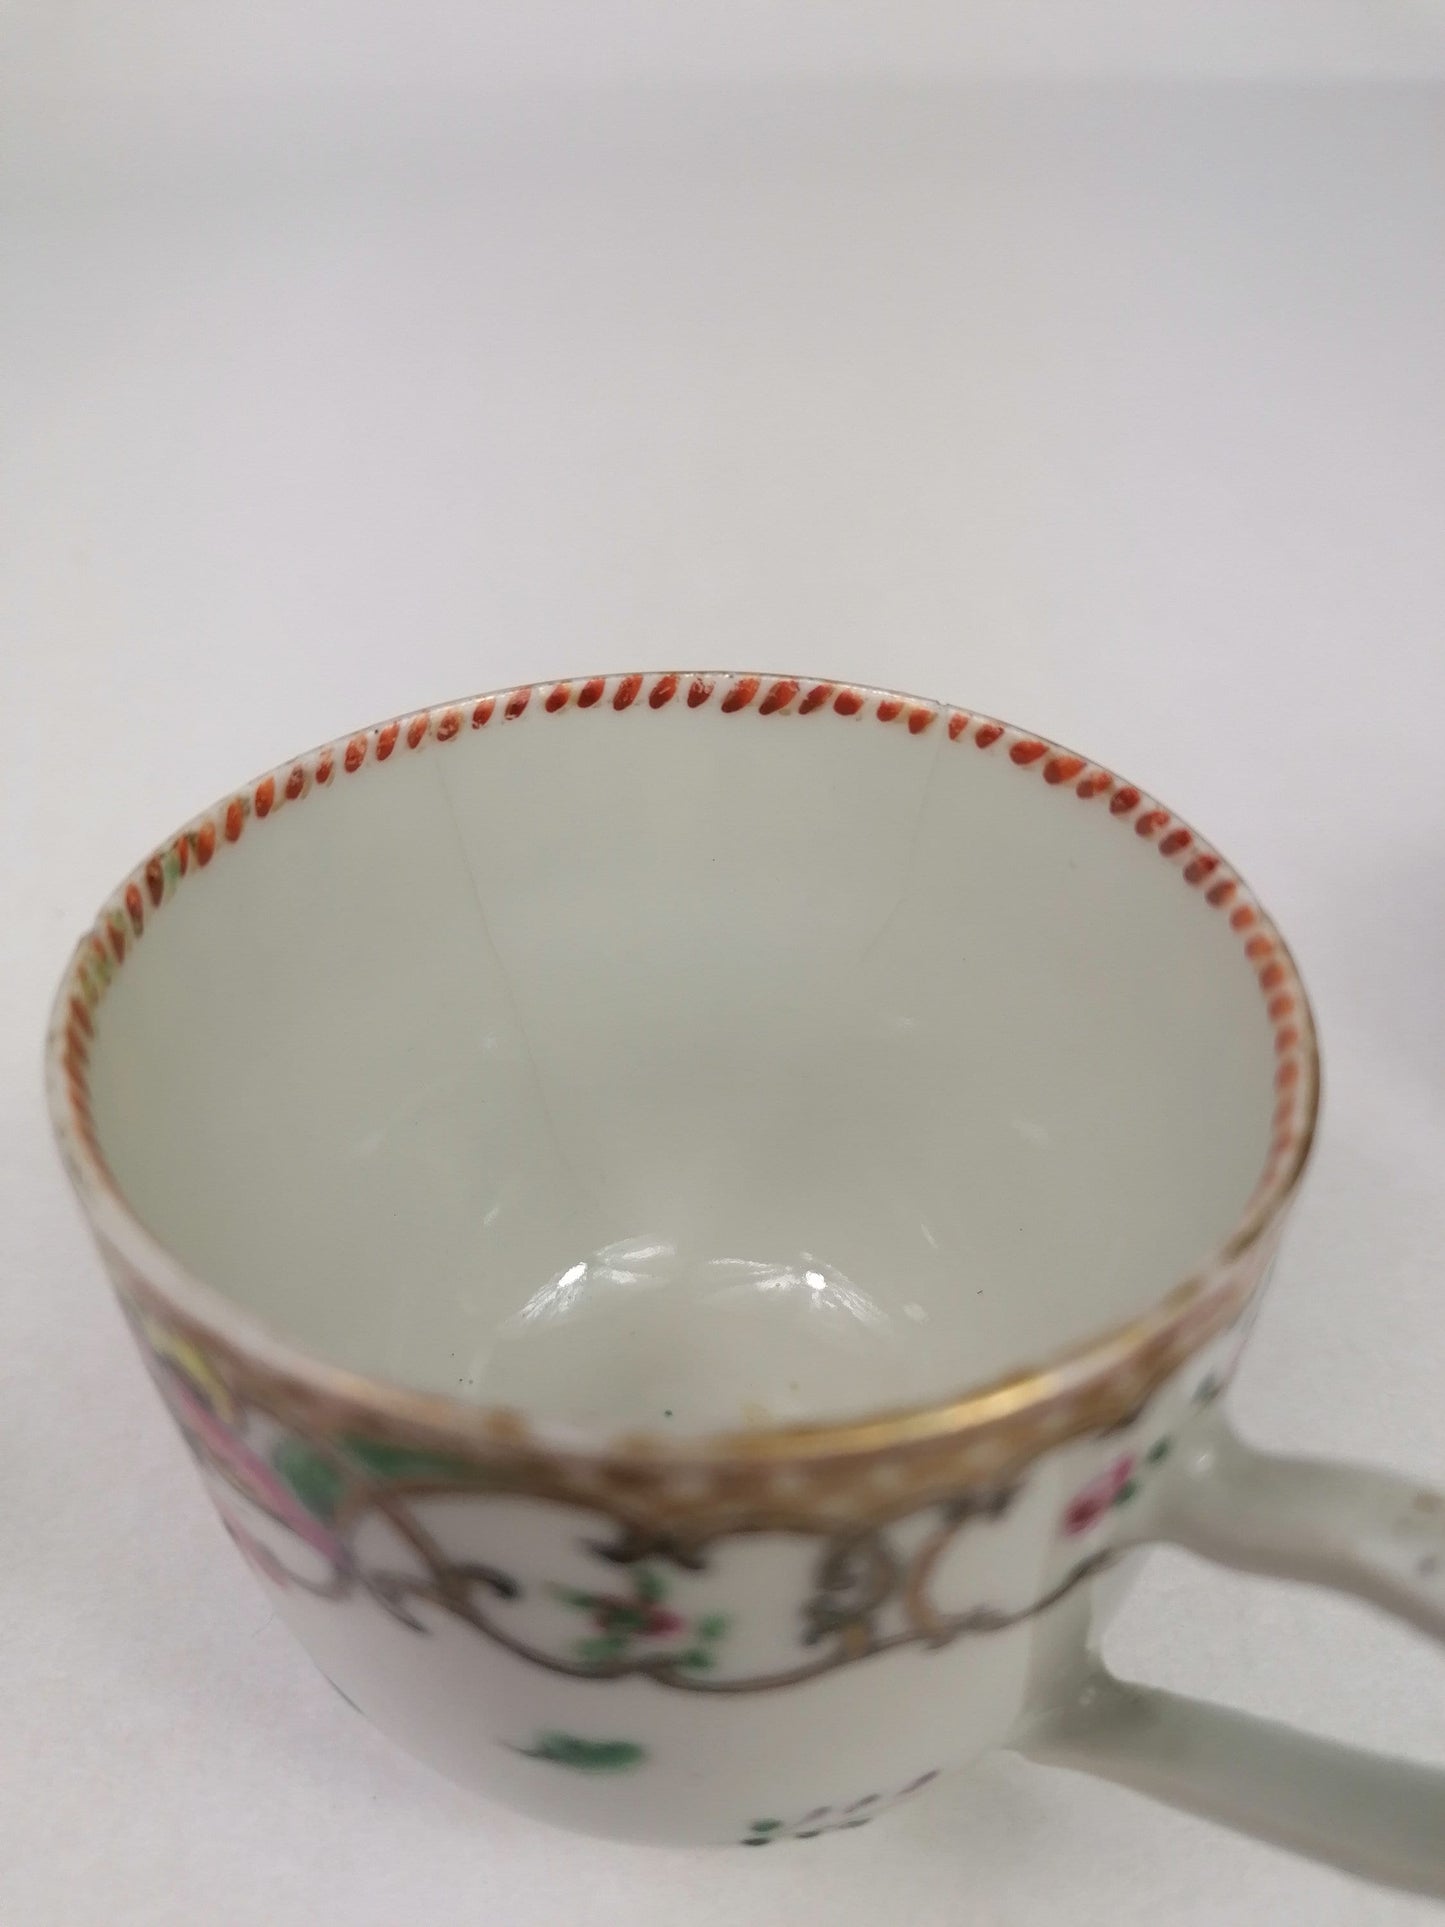 古董中国茶杯和碟子 2 件套 // 18 世纪 // 清代